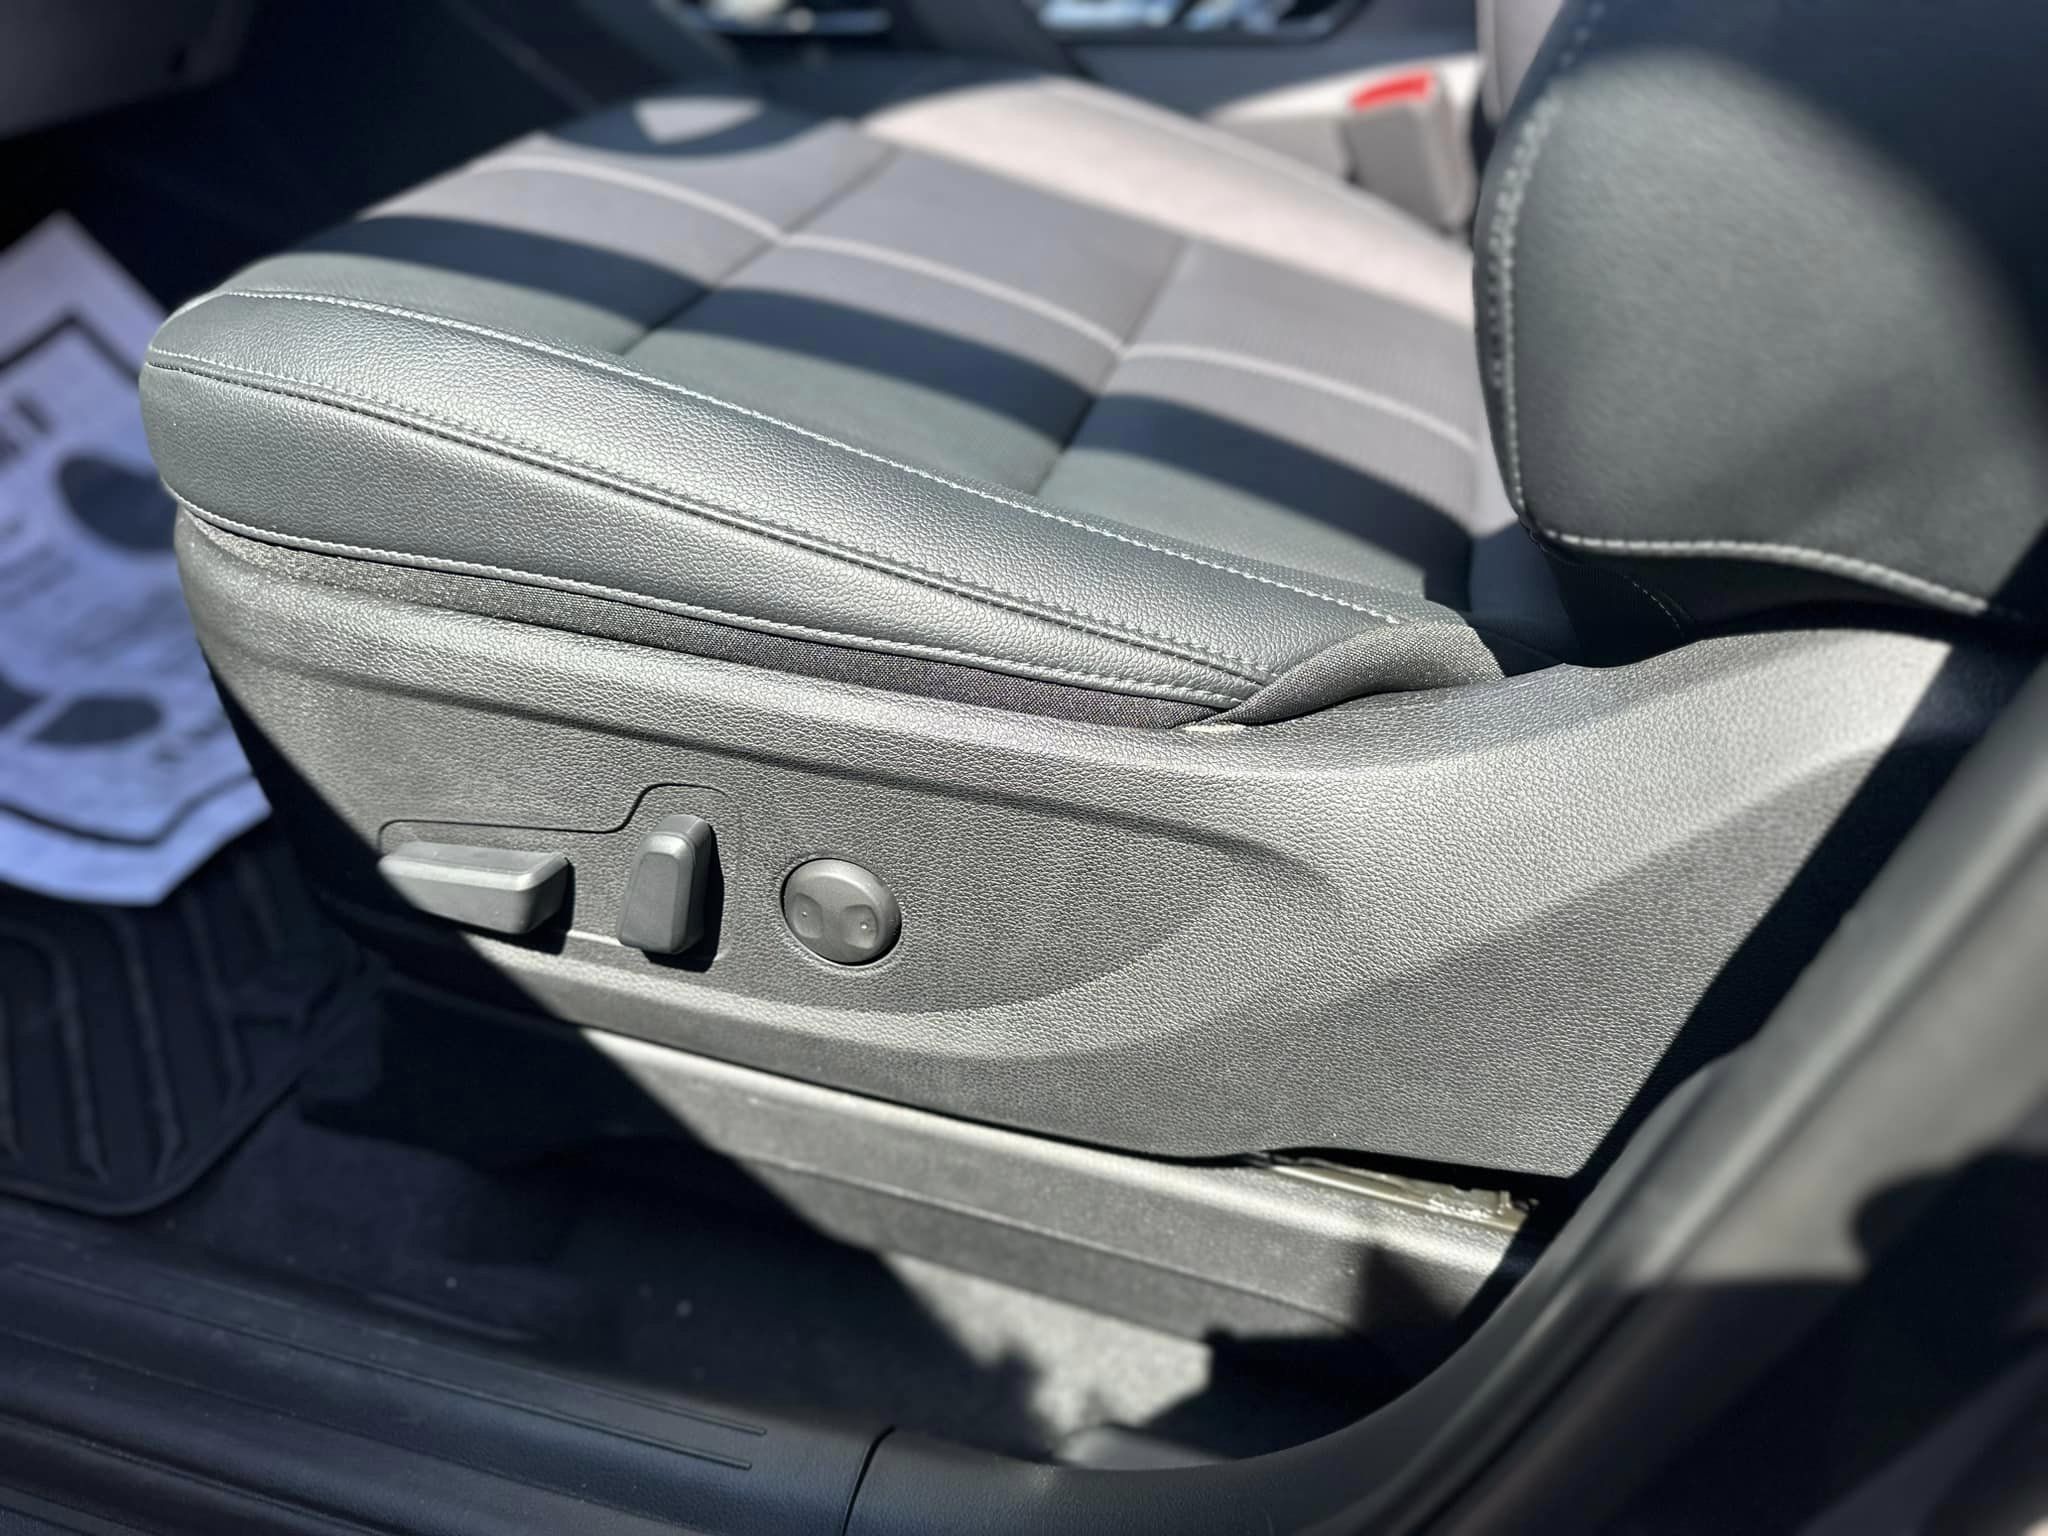 2023 Kia Telluride - EX Trim - Gravity Gray - Driver's Seat Controls